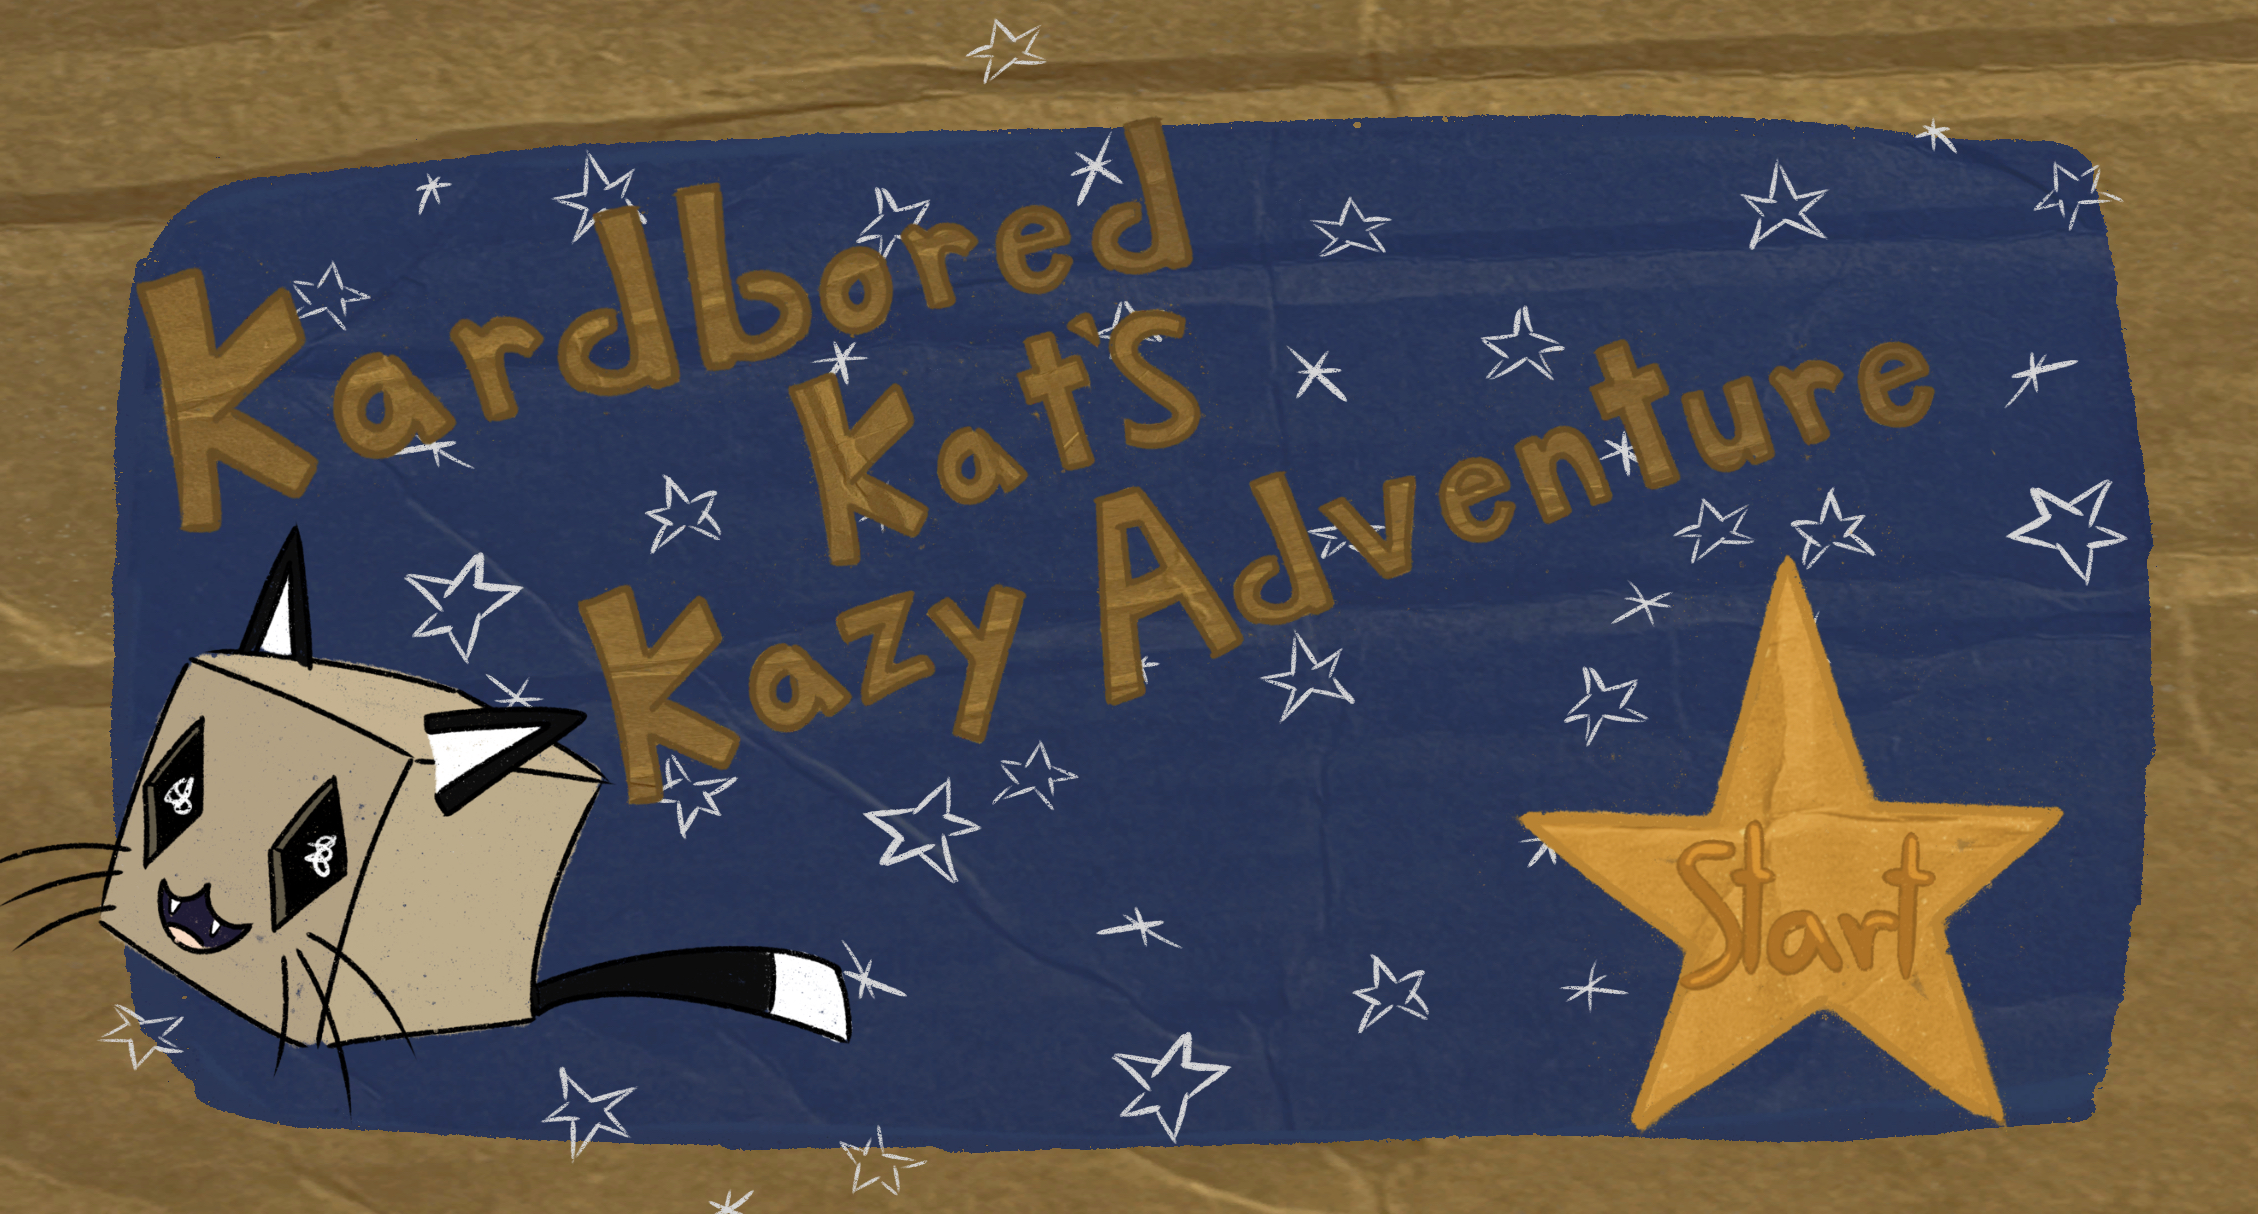 Kardbored Kat!